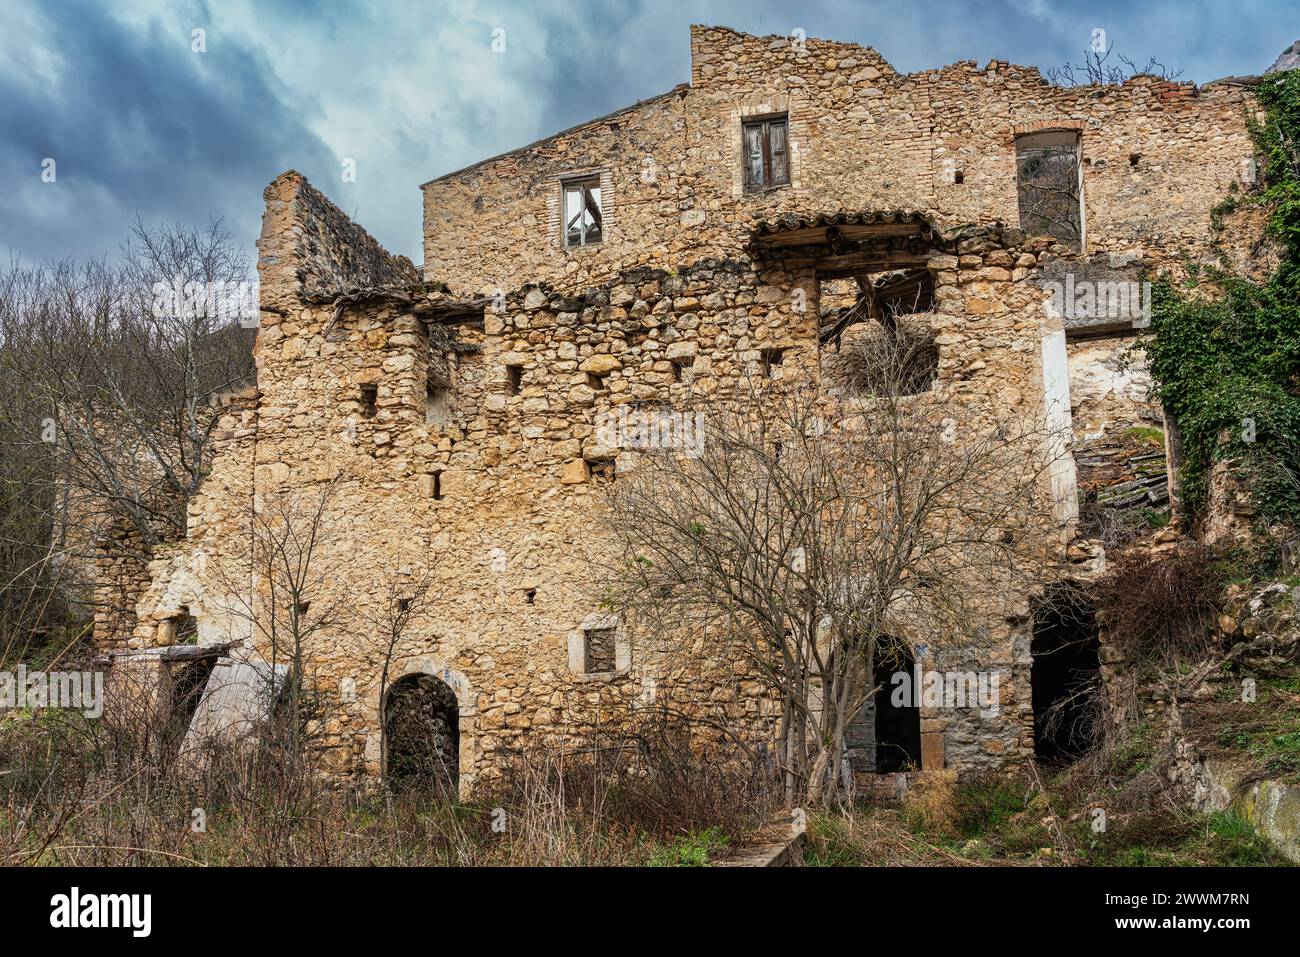 Case di pietra e fango ora ridotte a rovine senza tetti e con pareti crollate. Bugnara, Provincia dell'Aquila, Abruzzo, Italia Europa Foto Stock